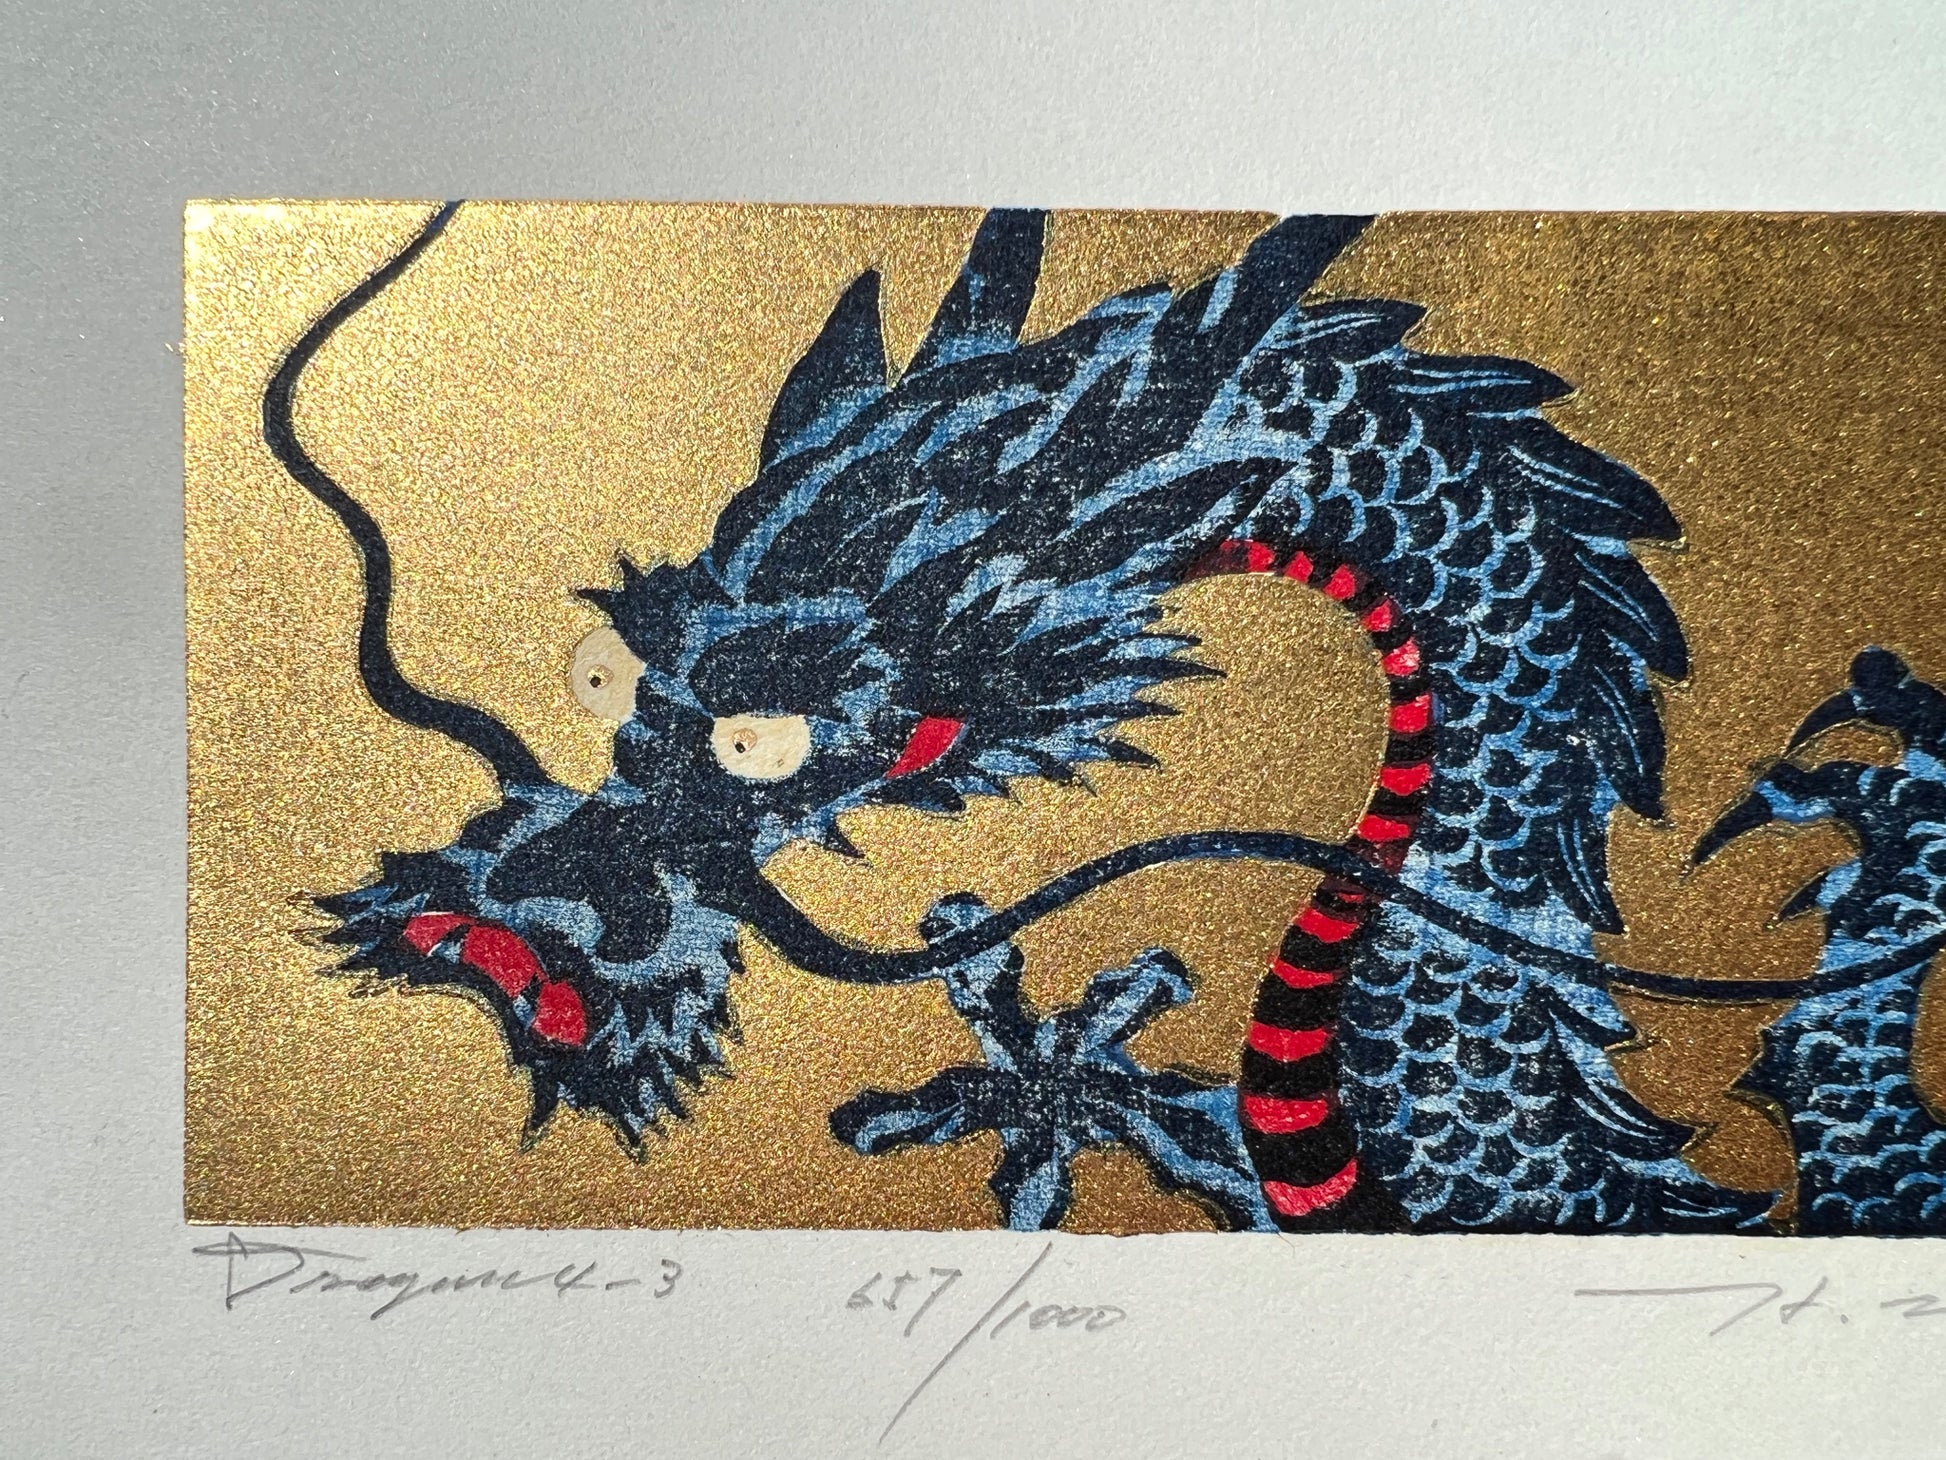 estampe japonaise dragon bleu sur fond or, gueule fermée, titre et numérotation 657/1000